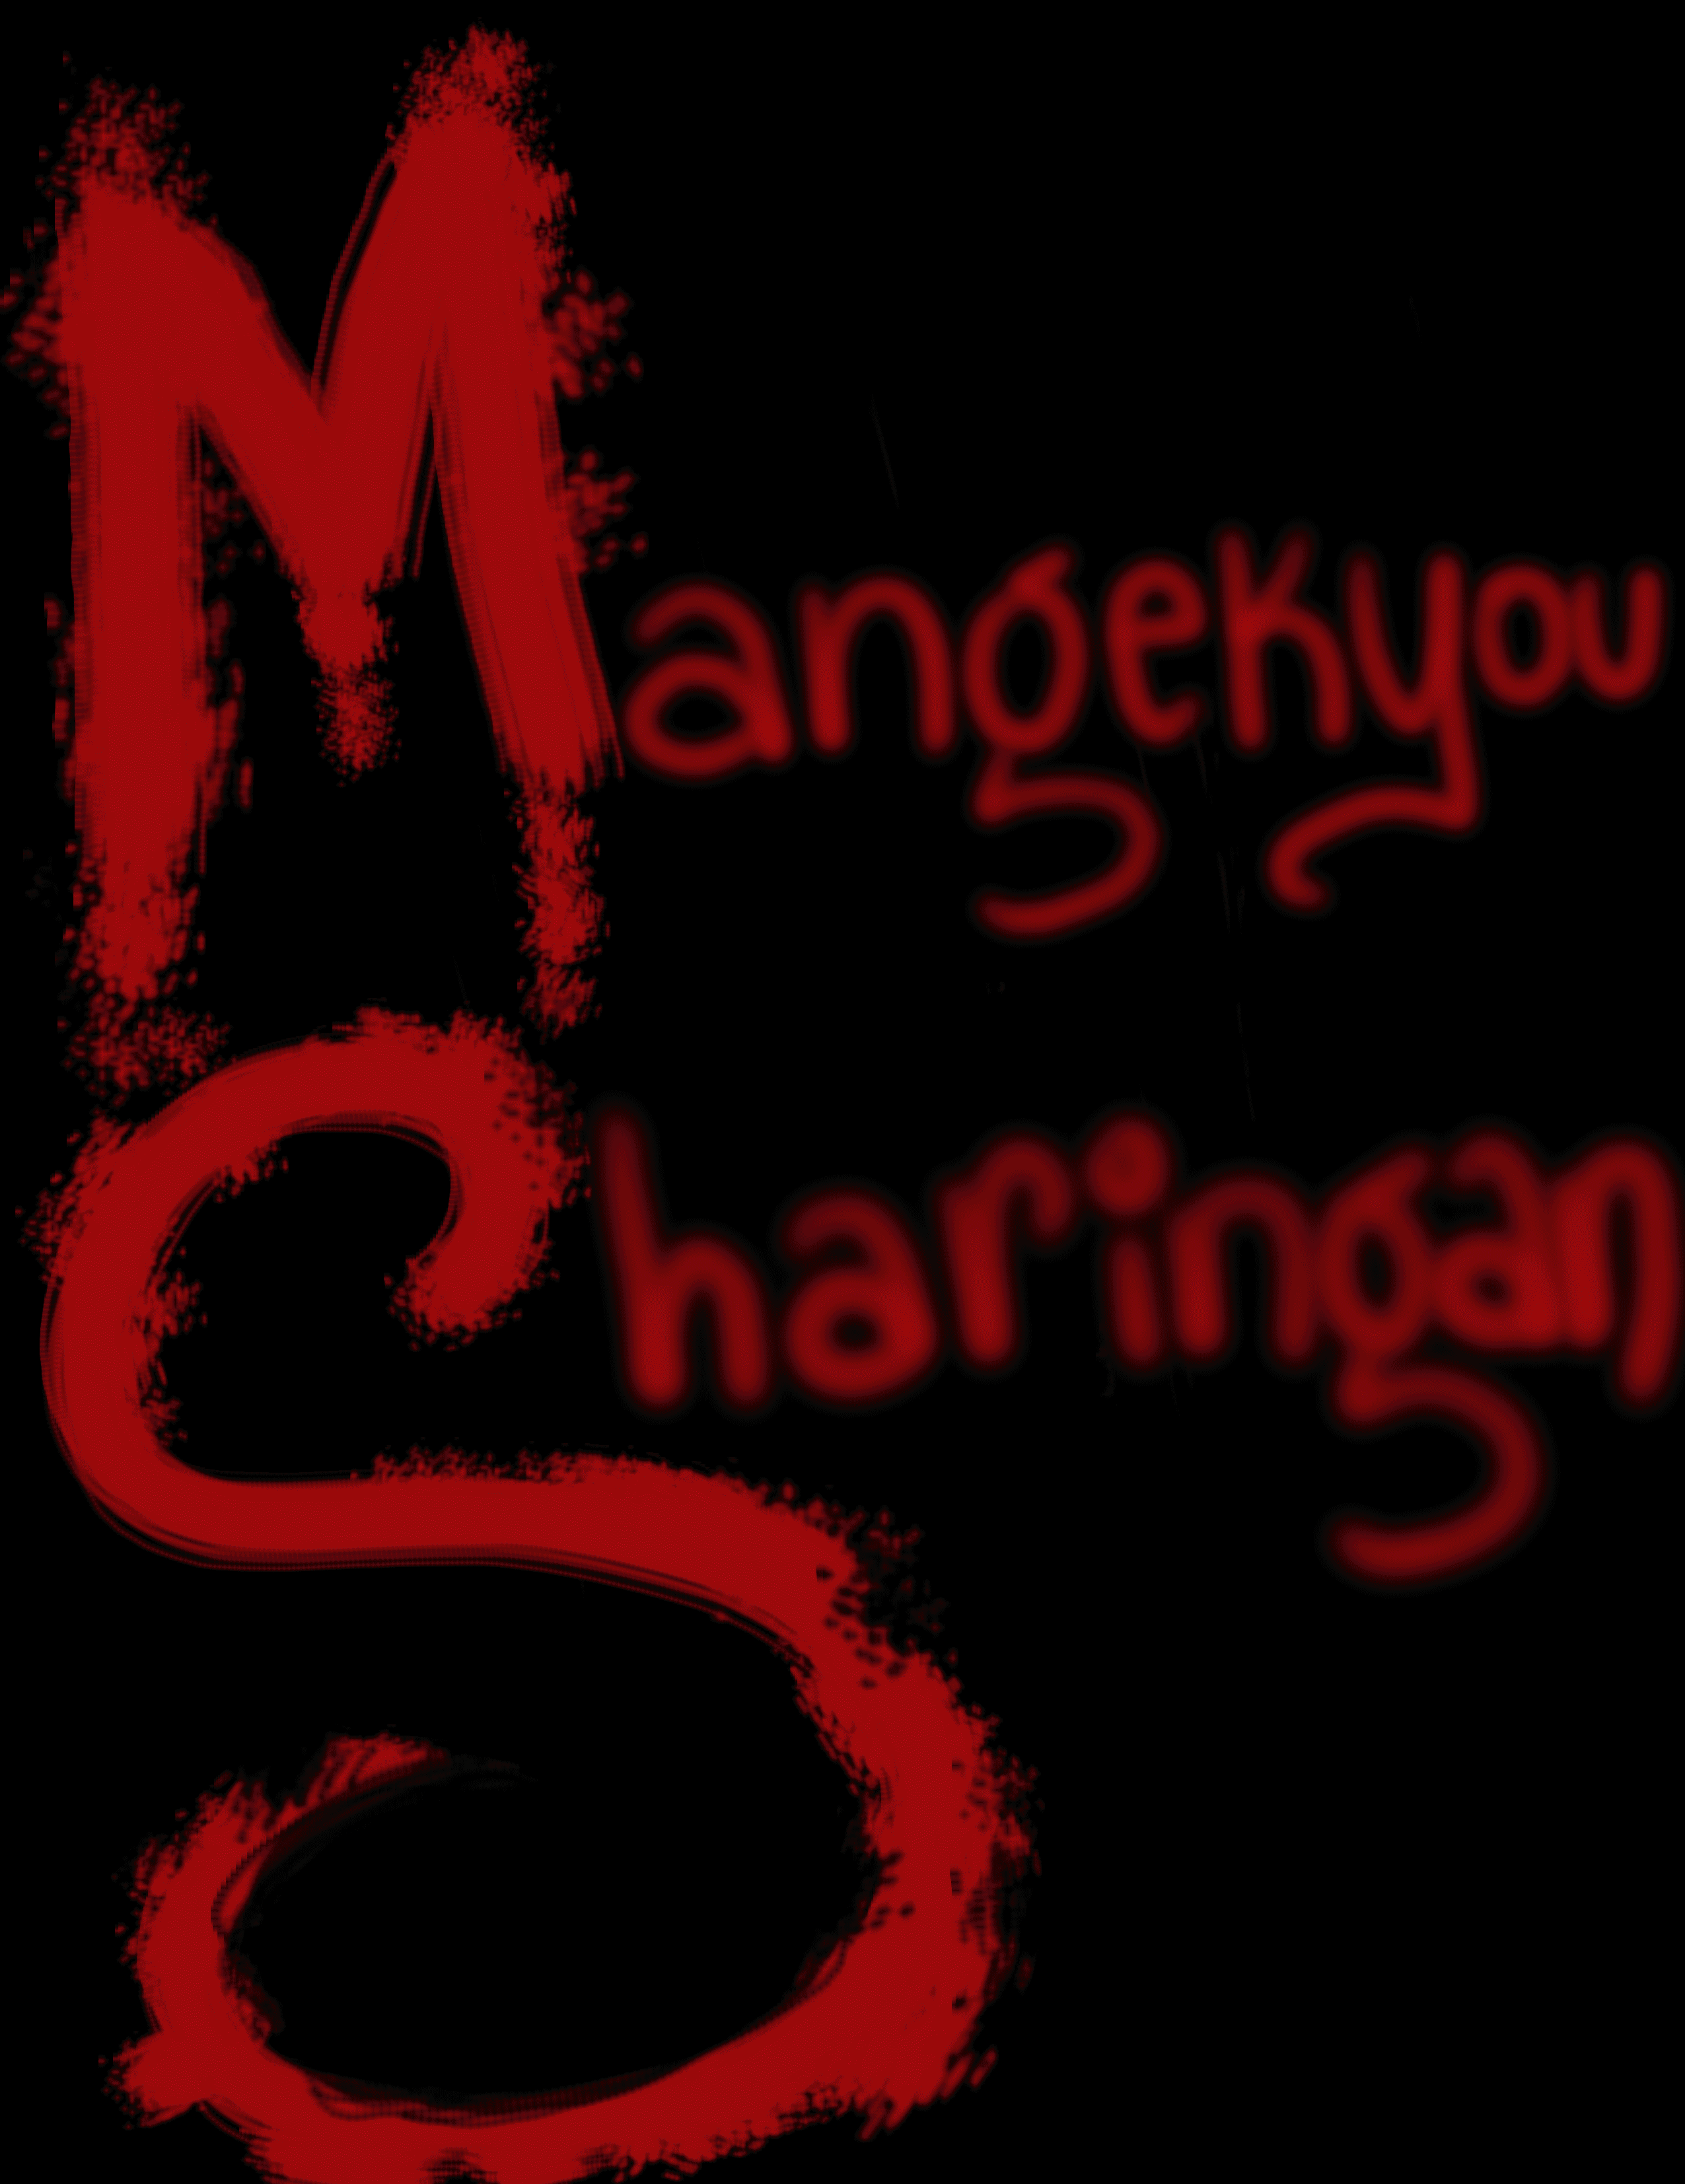 Mangekyou Sharingan Animation